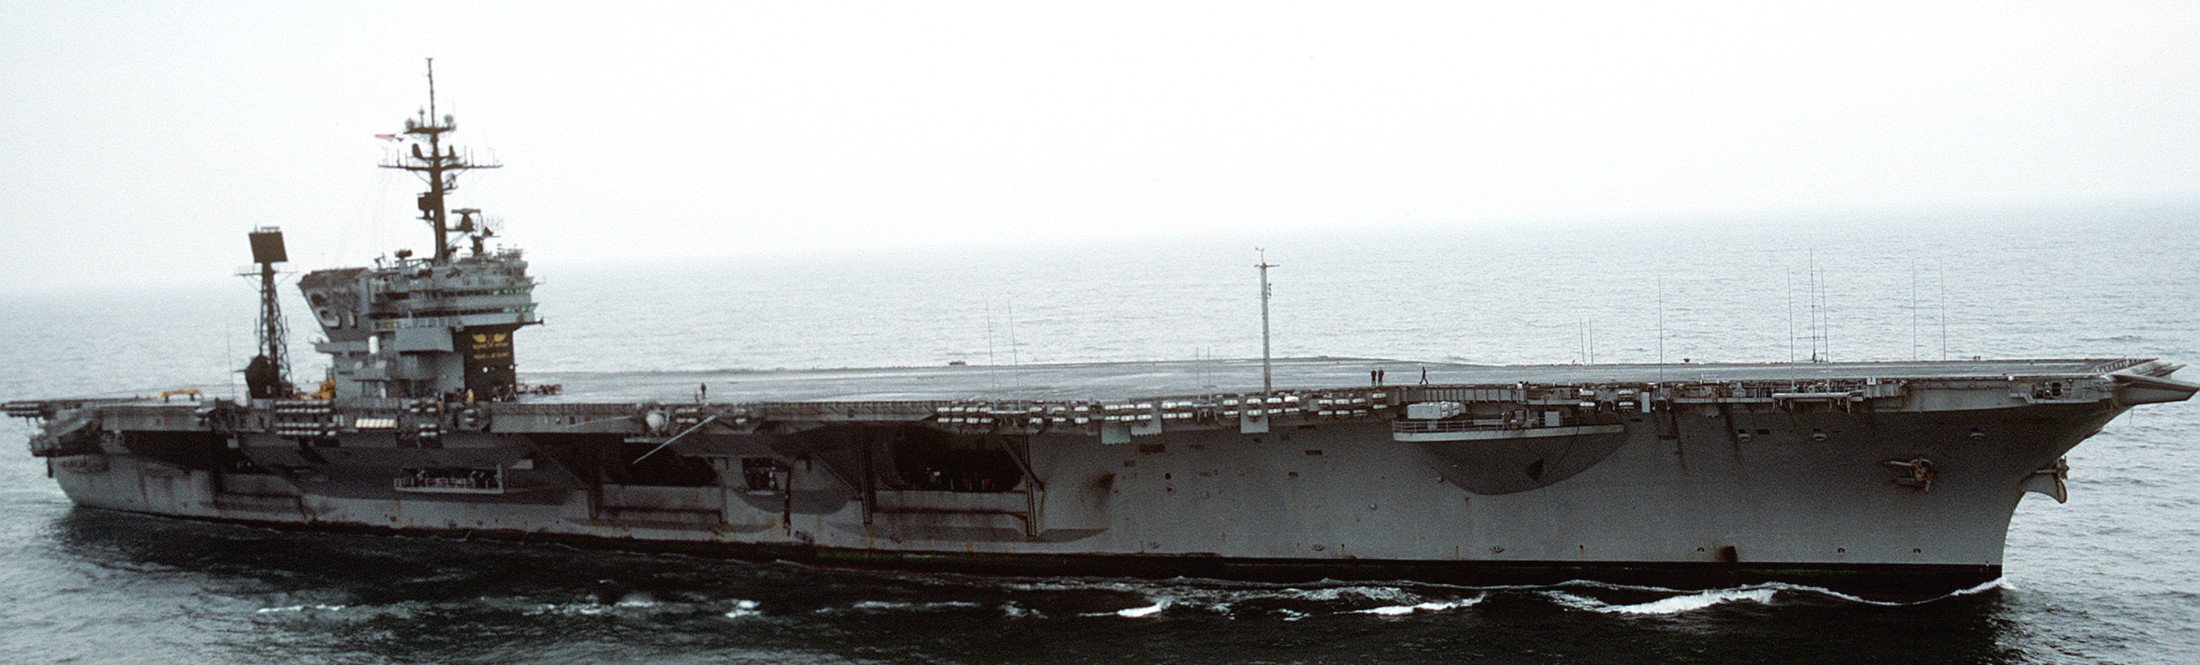 cv-67 uss john f. kennedy aircraft carrier us navy 37